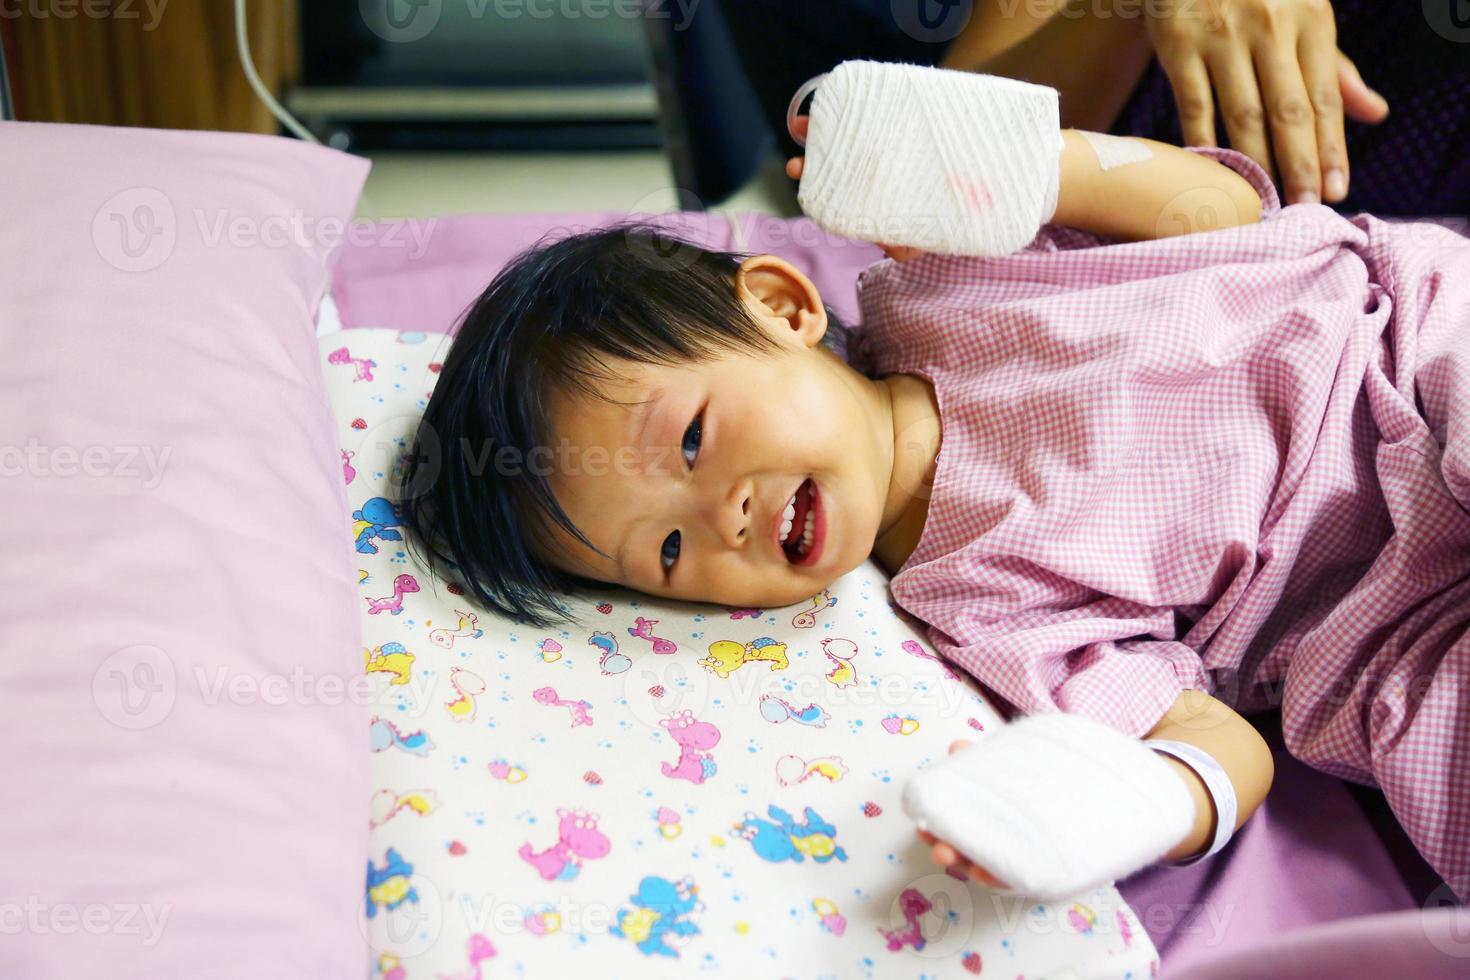 asiatisches baby hat fieber, wird dann ins krankenhaus eingeliefert und bekommt eine iv-röhre mit einem pad in den händen, um die medikamentennadel zu schützen. foto